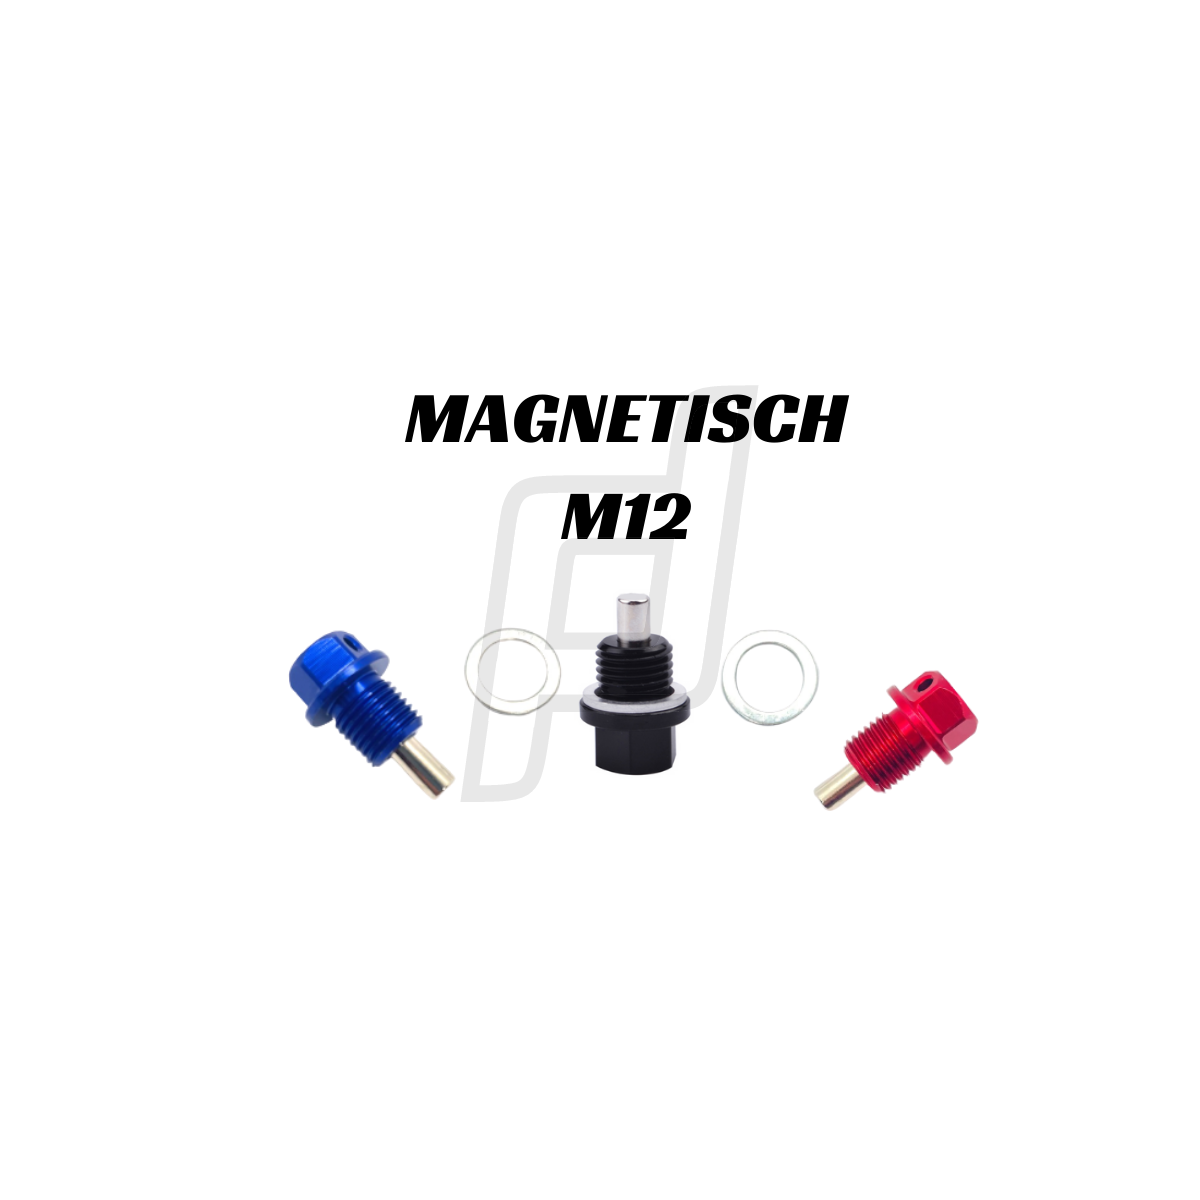 IMR Ölablassschraube Magnetisch & gelocht M12 x 1,5 Blau